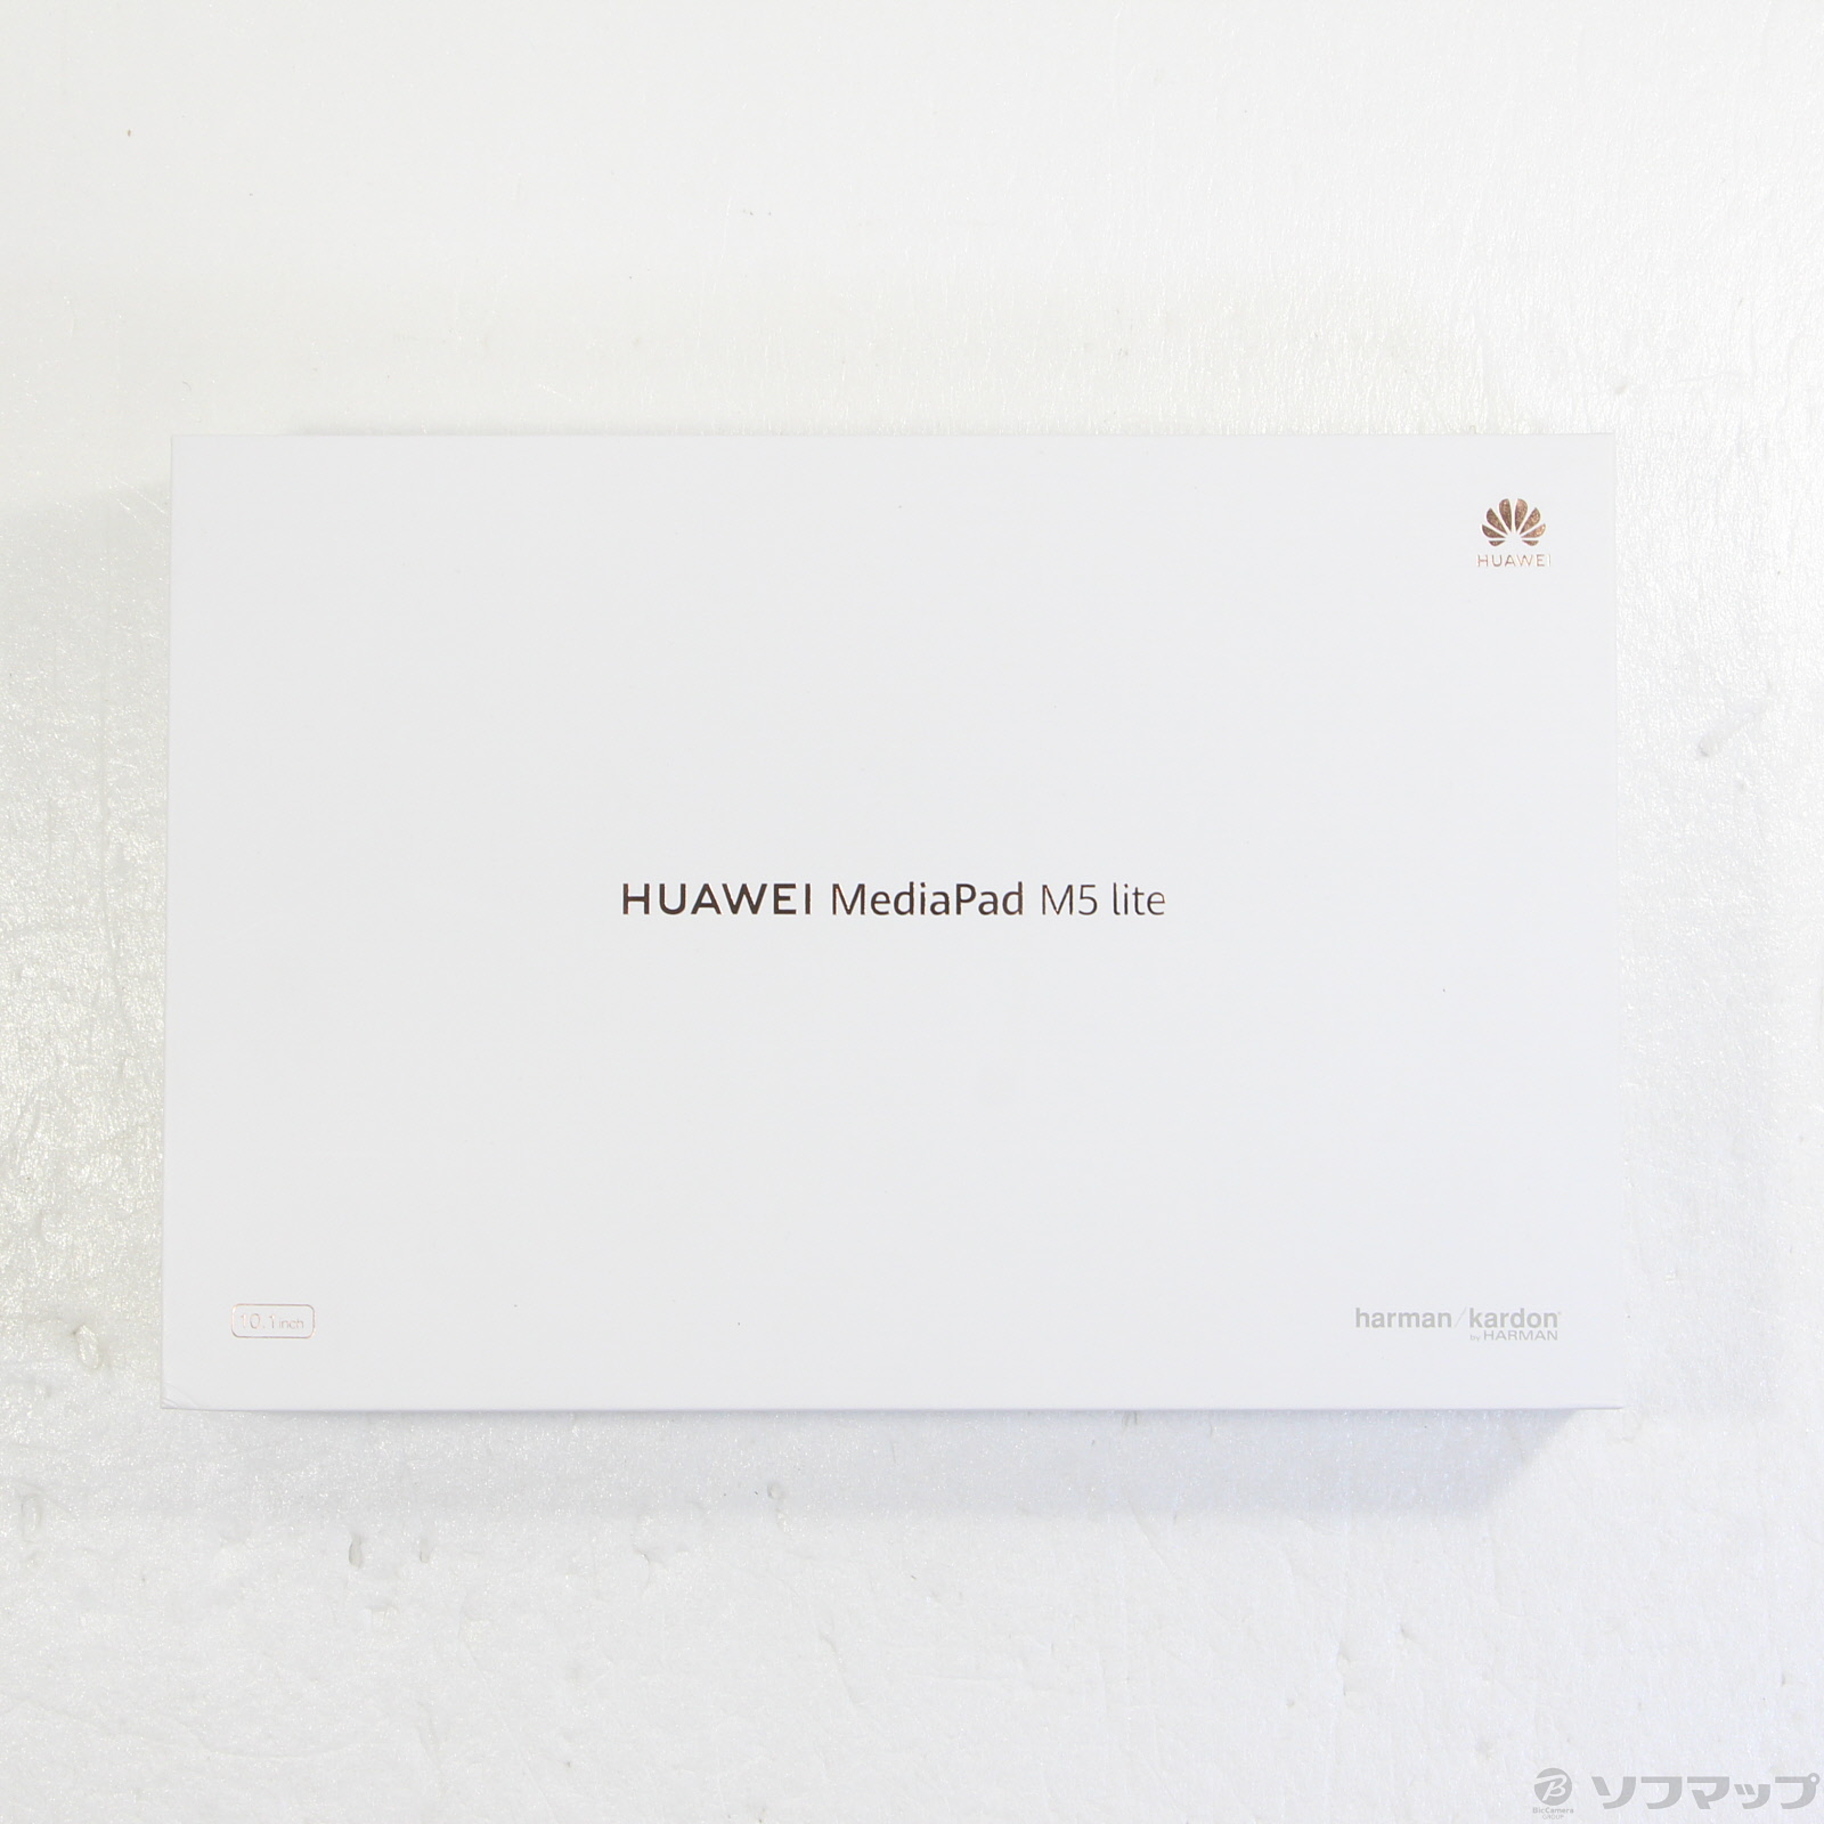 Huawei　mediapad M5 pro 新品未使用